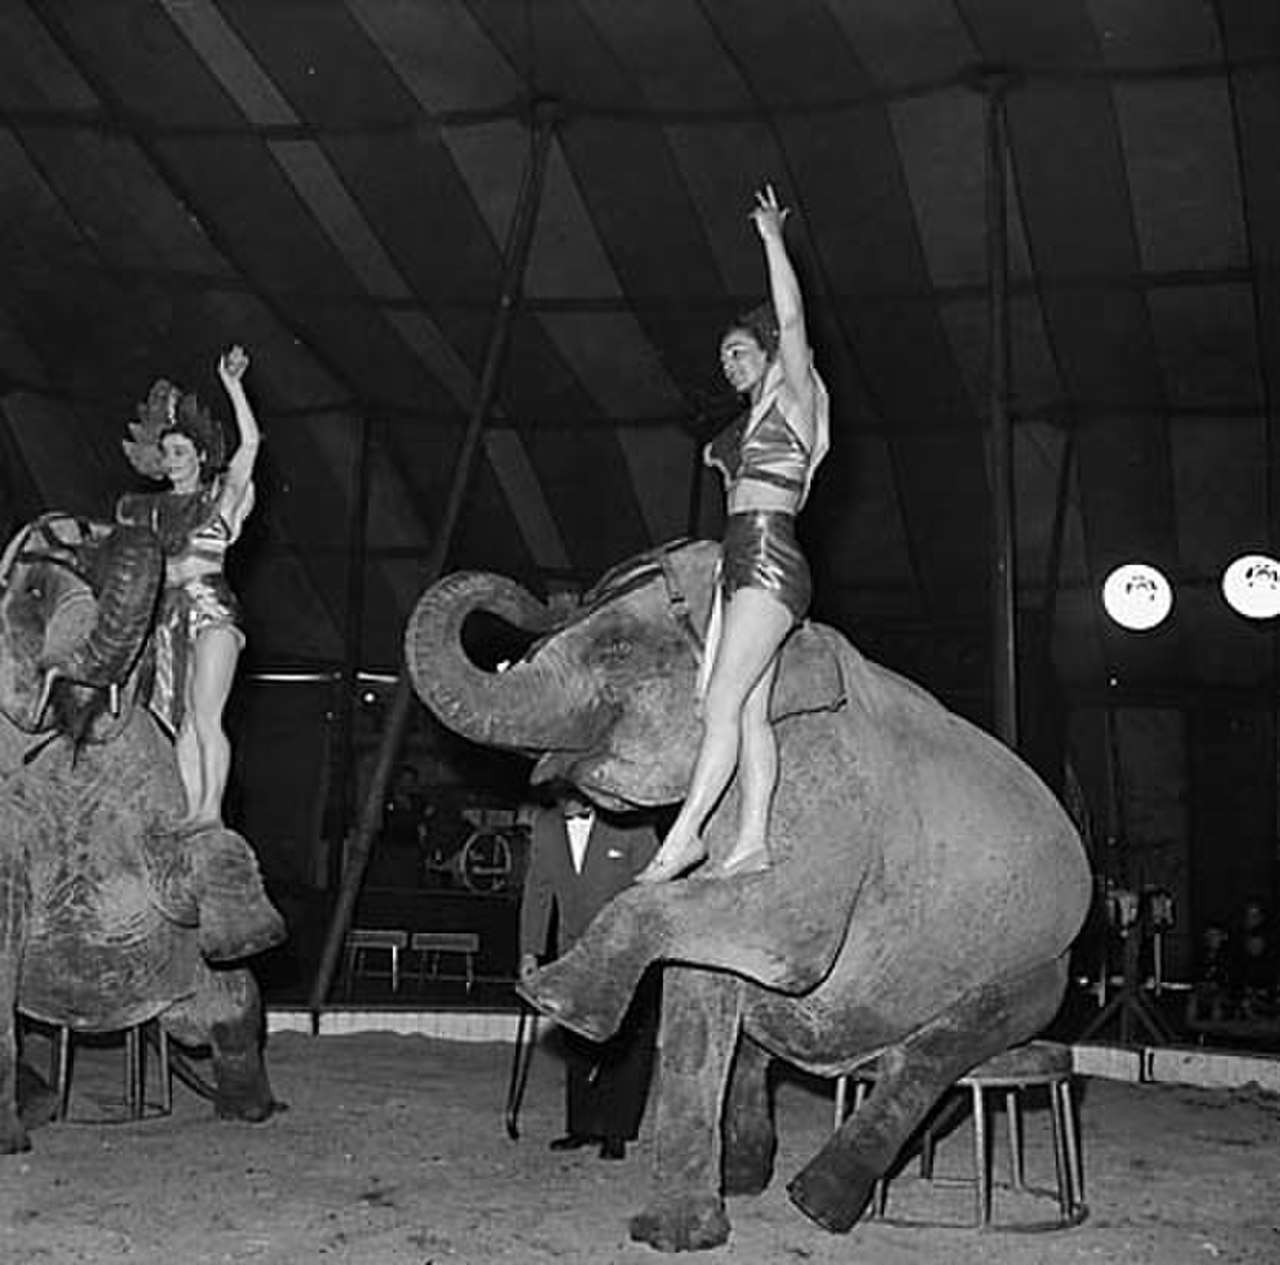 Larry am at the circus. Слон в цирке. Маленькие Слонята в цирке. Как обращаются с слонами в цирке. Claude at the Circus.